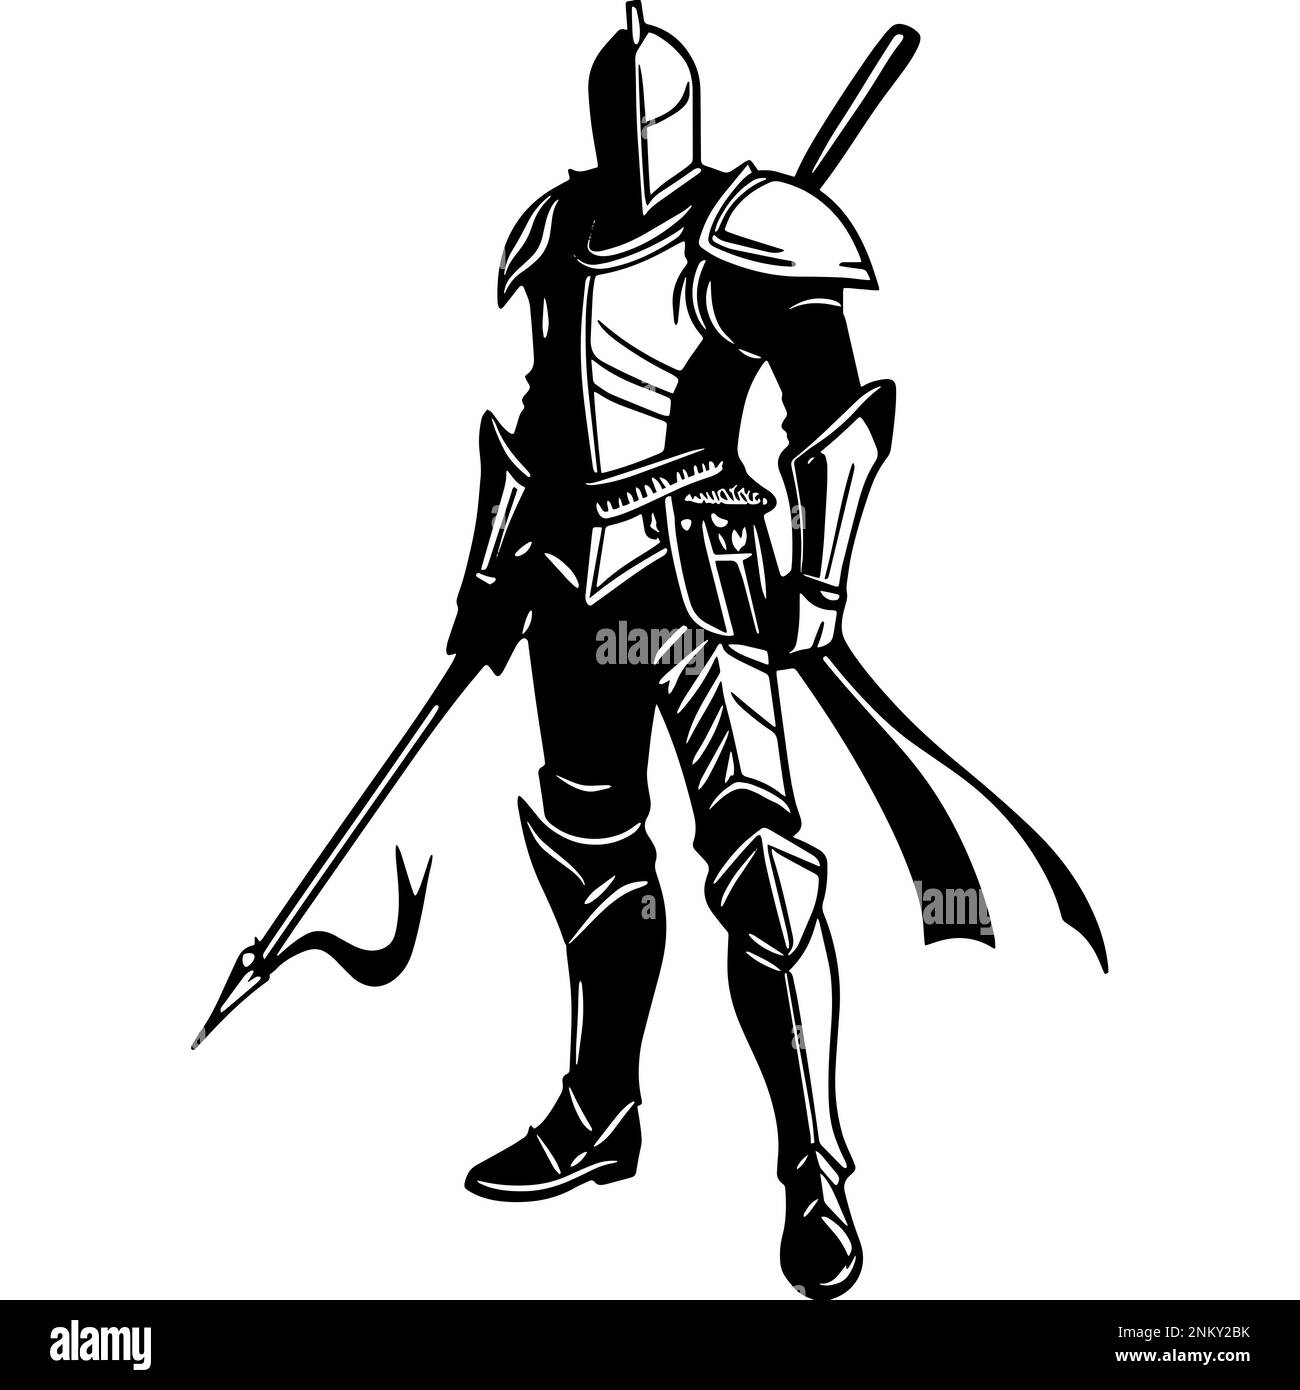 Eine monochrome Illustration eines Kriegers in Rüstung zeigt eine sehr detaillierte Zeichnung eines mittelalterlichen Ritters Stockfoto